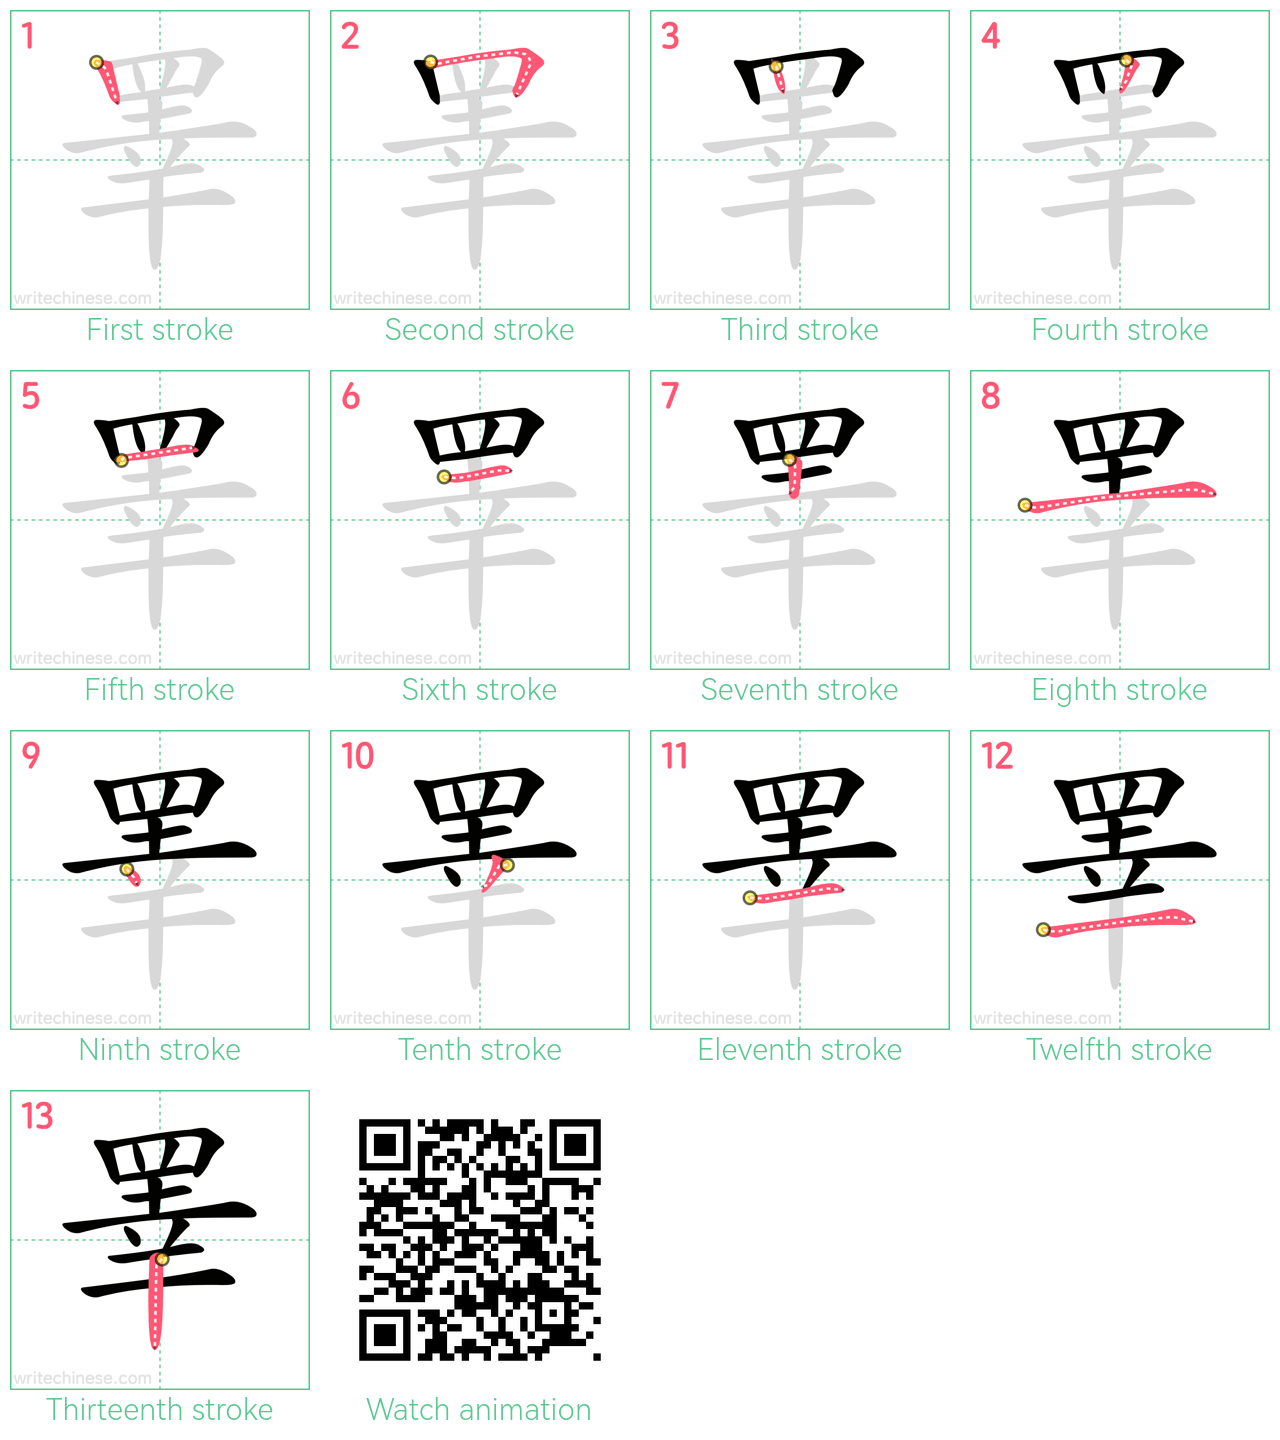 睪 step-by-step stroke order diagrams